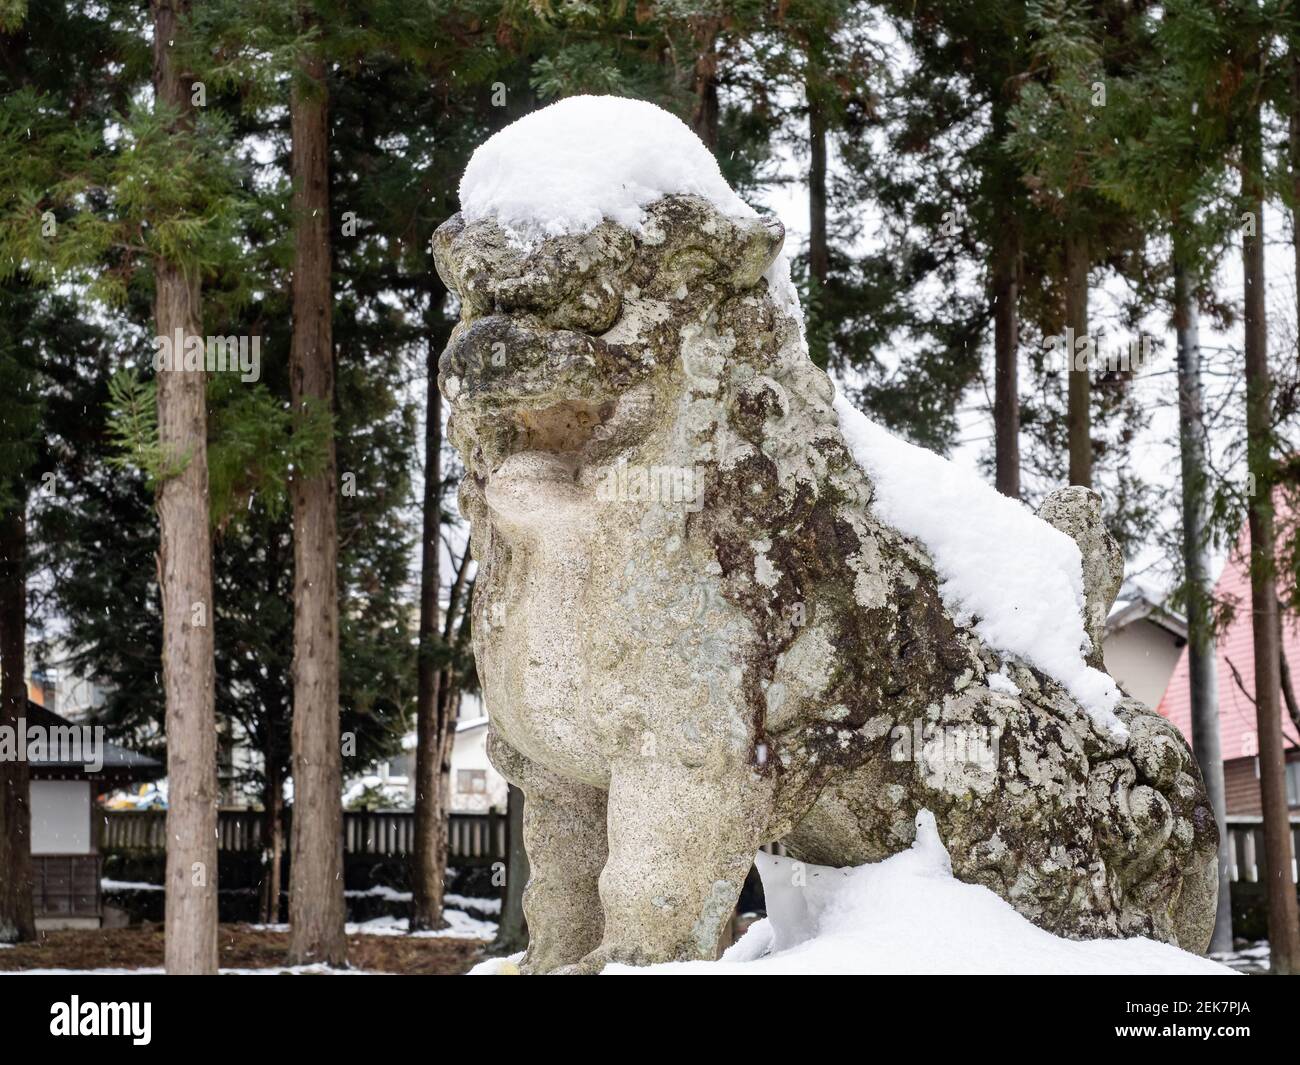 Una estatua del espíritu guardián japonés se encuentra cubierta de nieve por un pequeño santuario sintoísta en la prefectura de Yamanouchi, Japón. Foto de stock